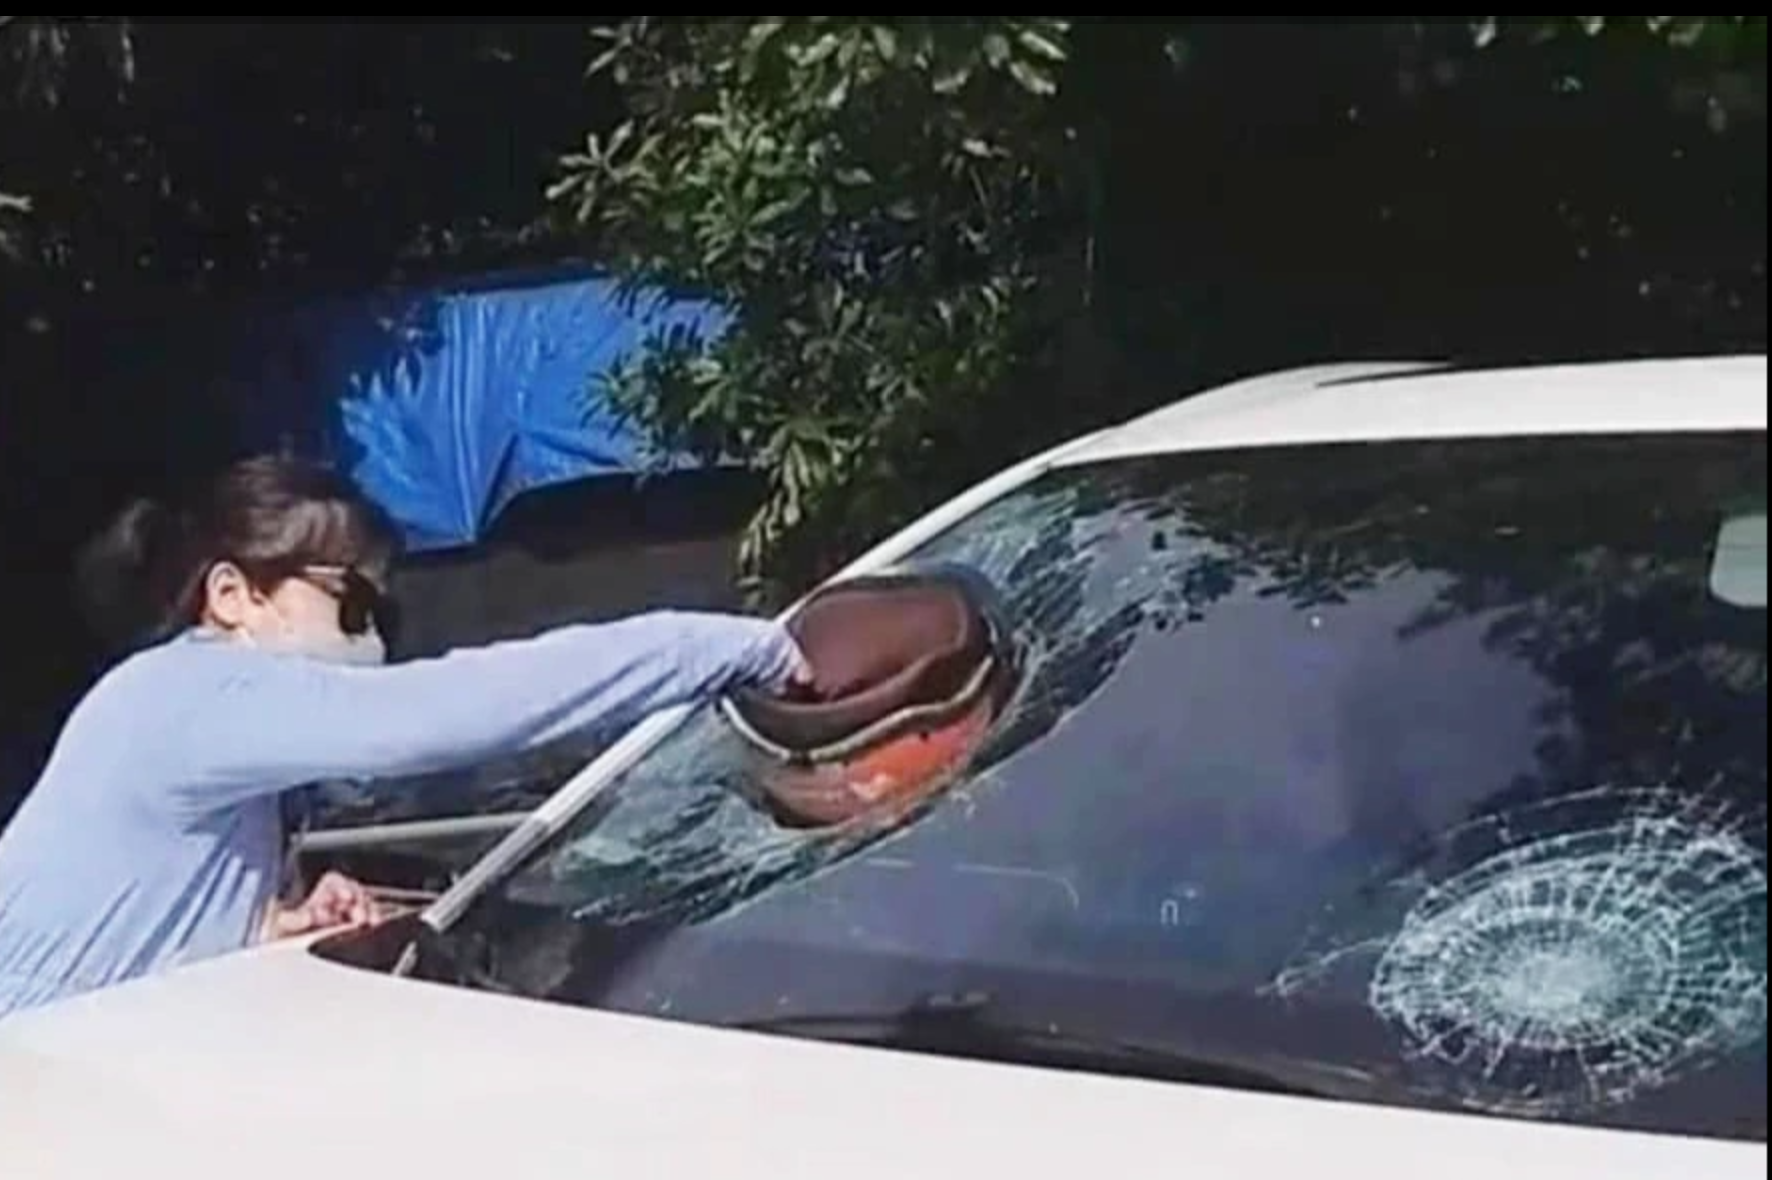  Hình ảnh người phụ nữ dùng mũ bảo hiểm đập vào kính xe ô tô nghi đánh ghen (Ảnh: Hoàng Bảo).